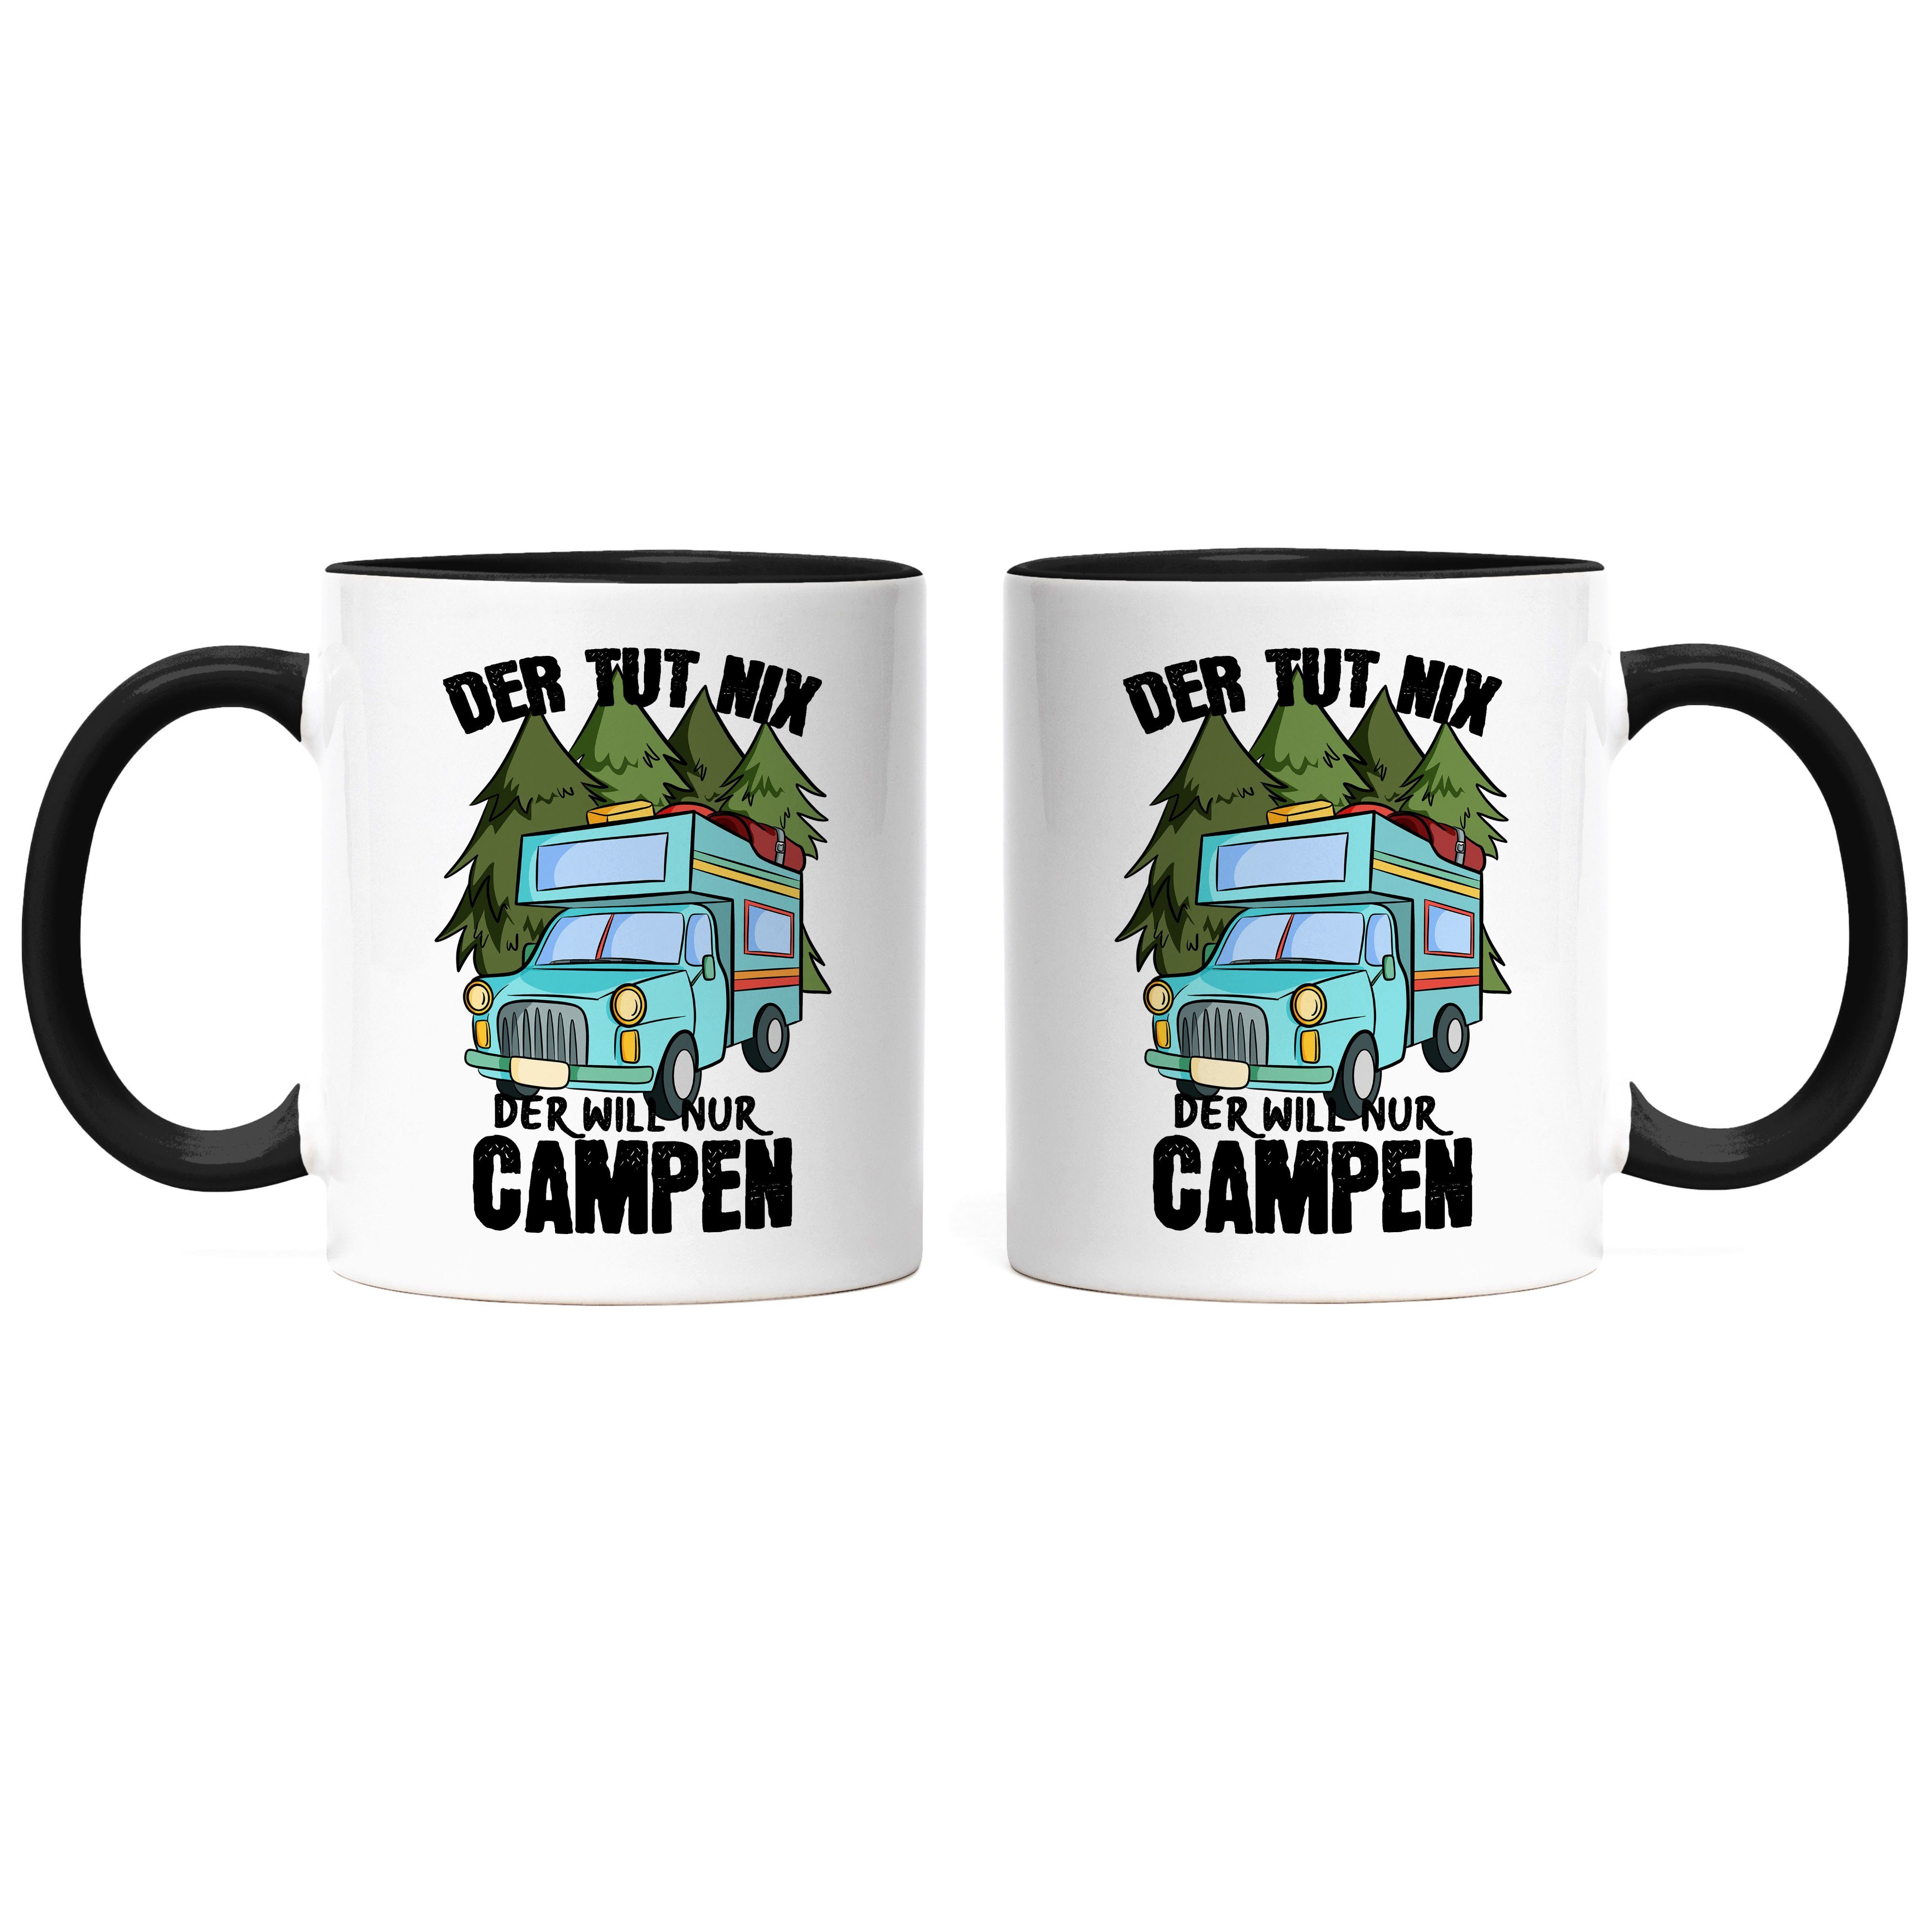 Wohnmobil Campen für Spruch Camping Geschenk der Schwarz nix Tasse Der nur Keramik Womo, Camper Tasse mit Hey!Print tut will Tasse